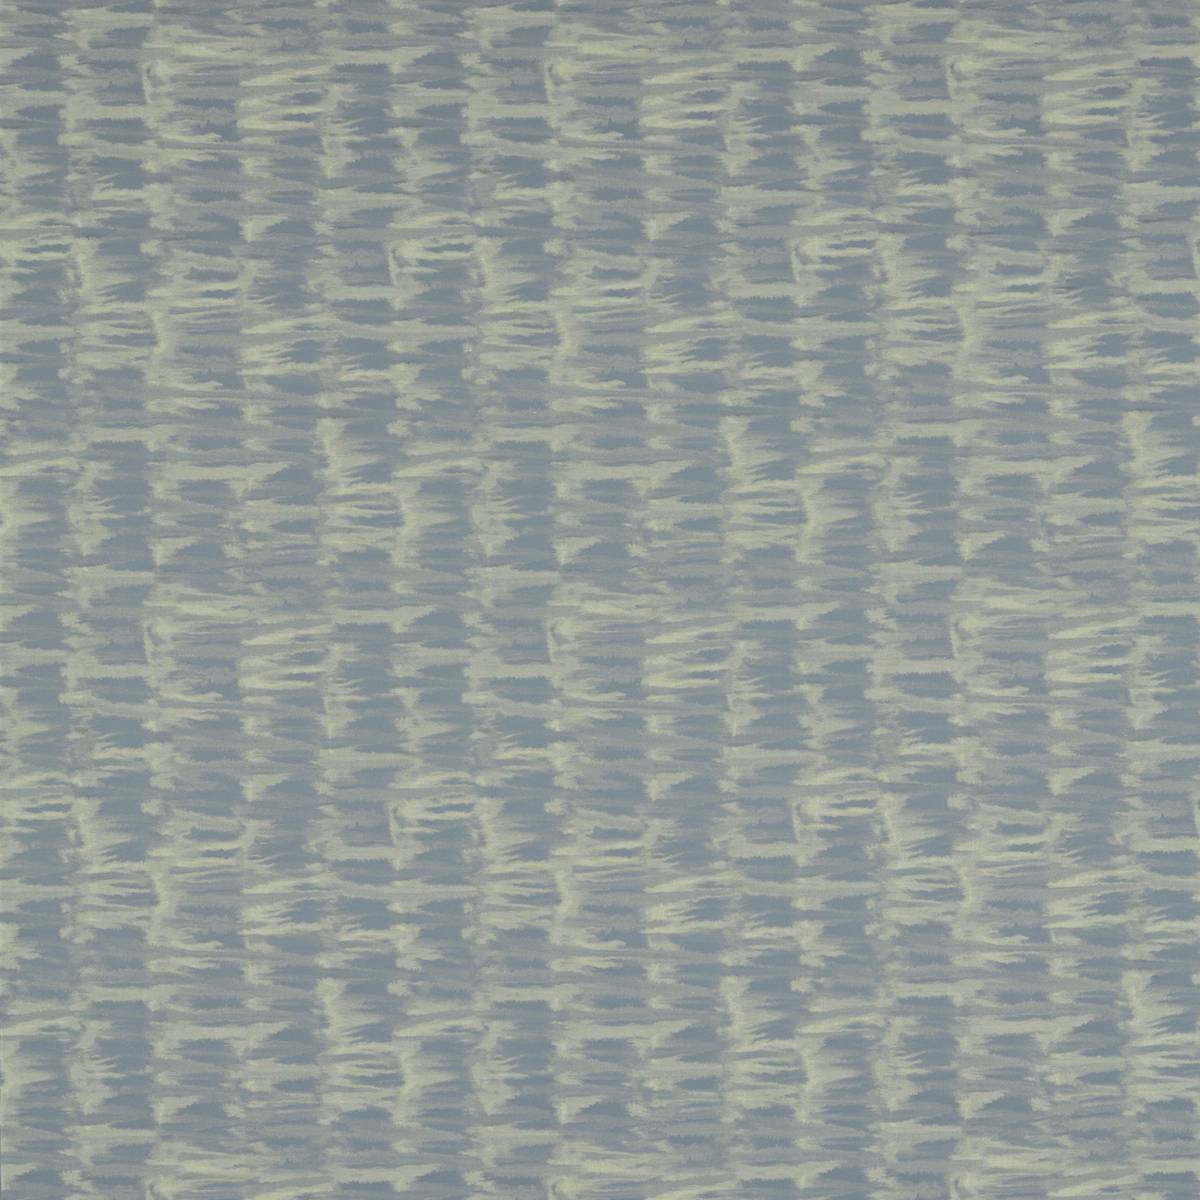 Mizu Urchin Fabric by Harlequin